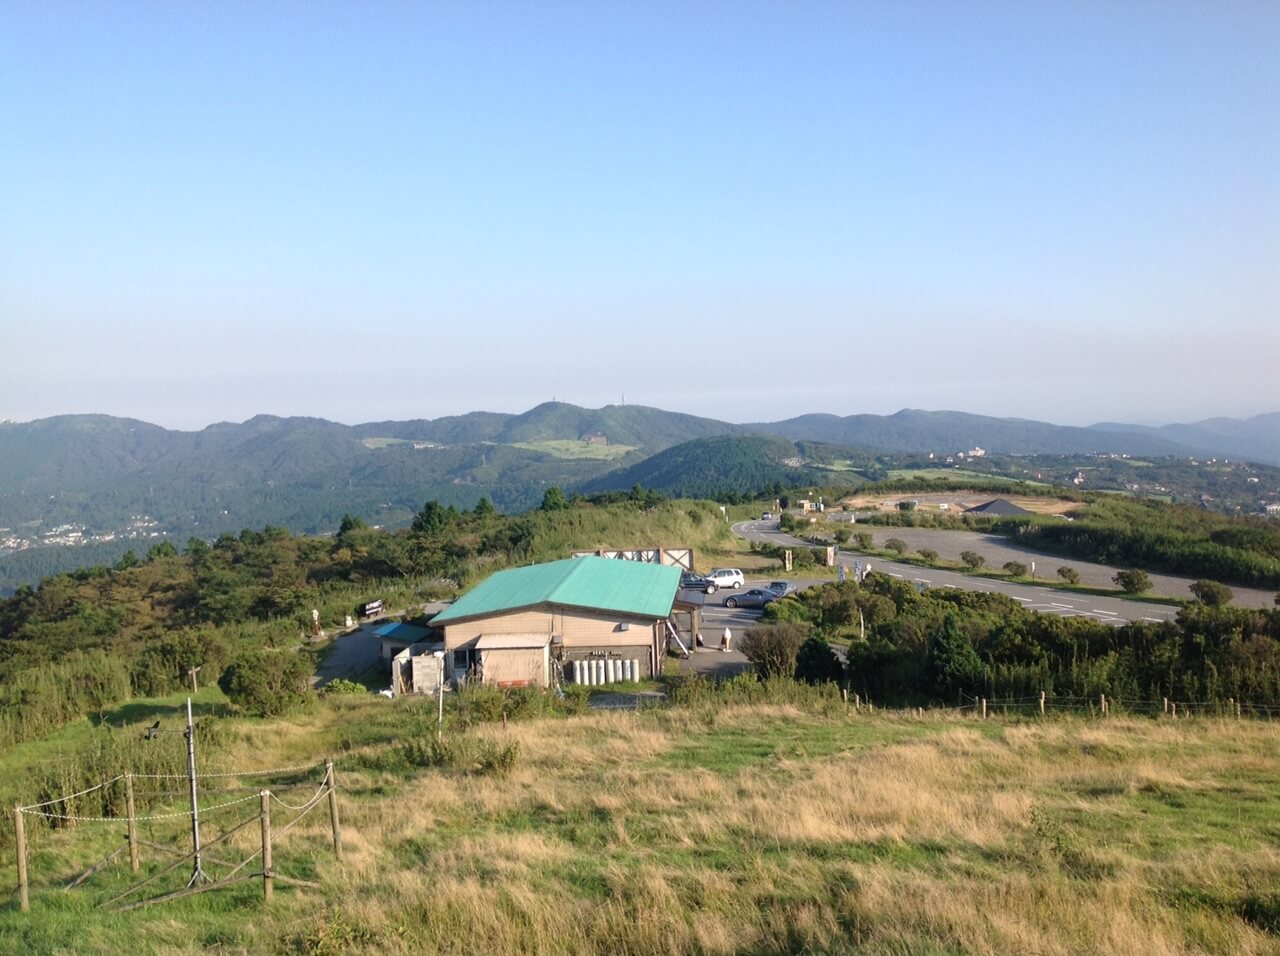 芦ノ湖スカイライン山伏峠展望台からの景色